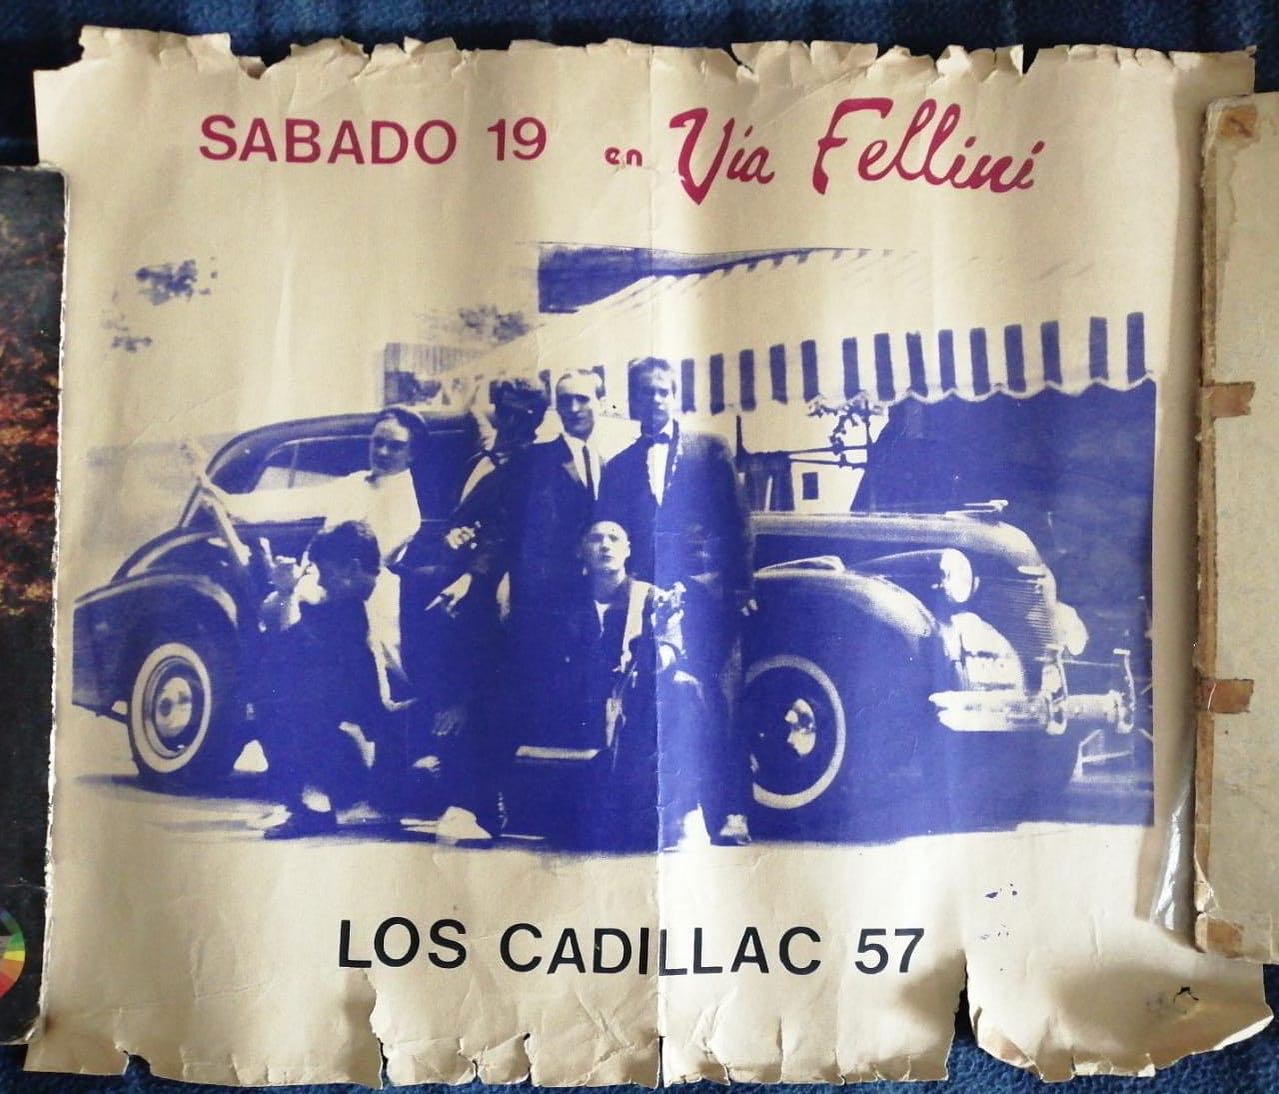 El debut de los Cadillacs 57 en Mar del Plata y el recuerdo de «Vía Fellini»